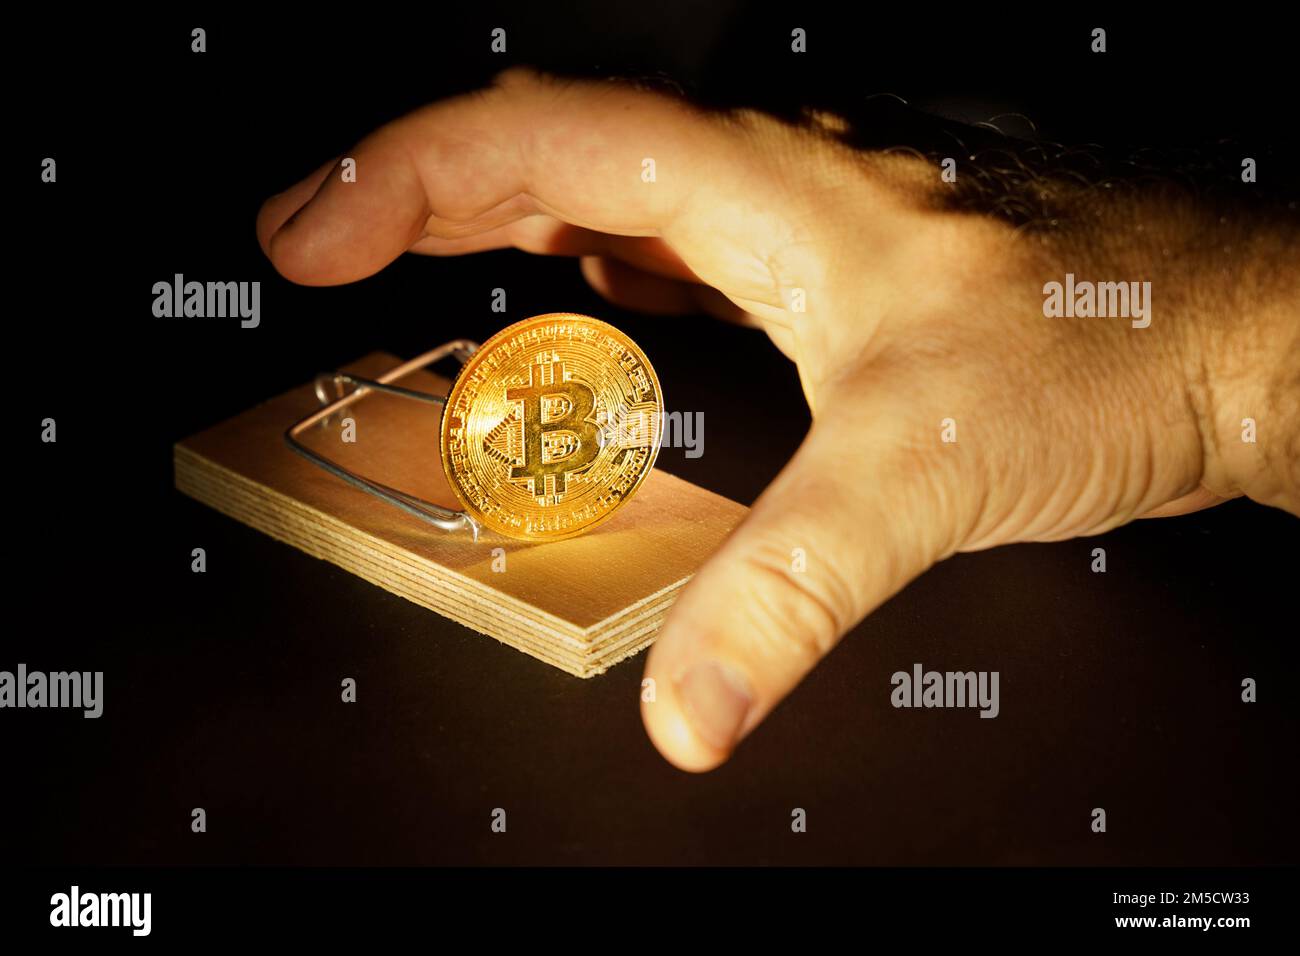 La main atteint pour le bitcoin du mousetrap. Risques et dangers liés à l'investissement dans la crypto-monnaie. Banque D'Images